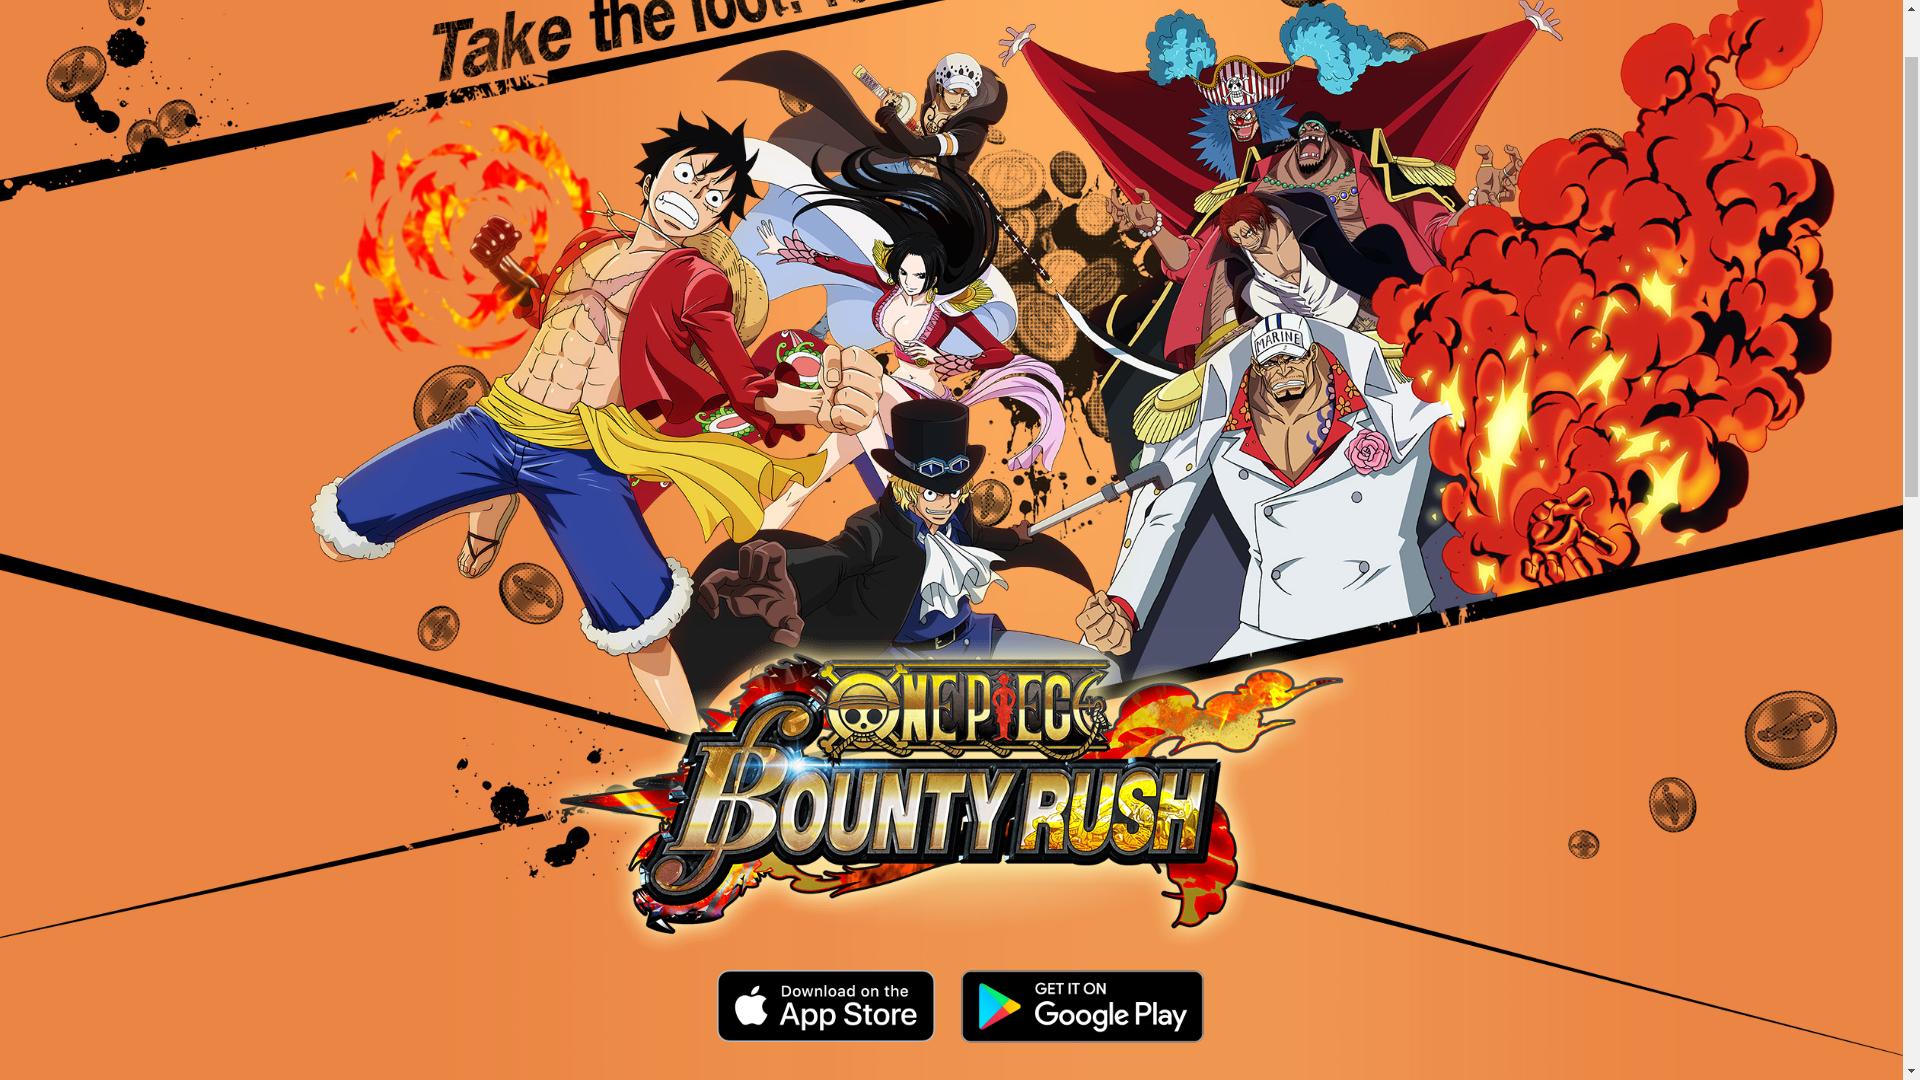 One Piece Bounty Rush Mobile: Cùng khám phá thế giới đầy mê hoặc của One Piece qua mobile game chính thức - One Piece Bounty Rush! Với đồ họa tuyệt đẹp, đội hình đa dạng và những trận chiến kịch tính, tựa game này chắc chắn sẽ khiến bạn không thể rời mắt khỏi màn hình!